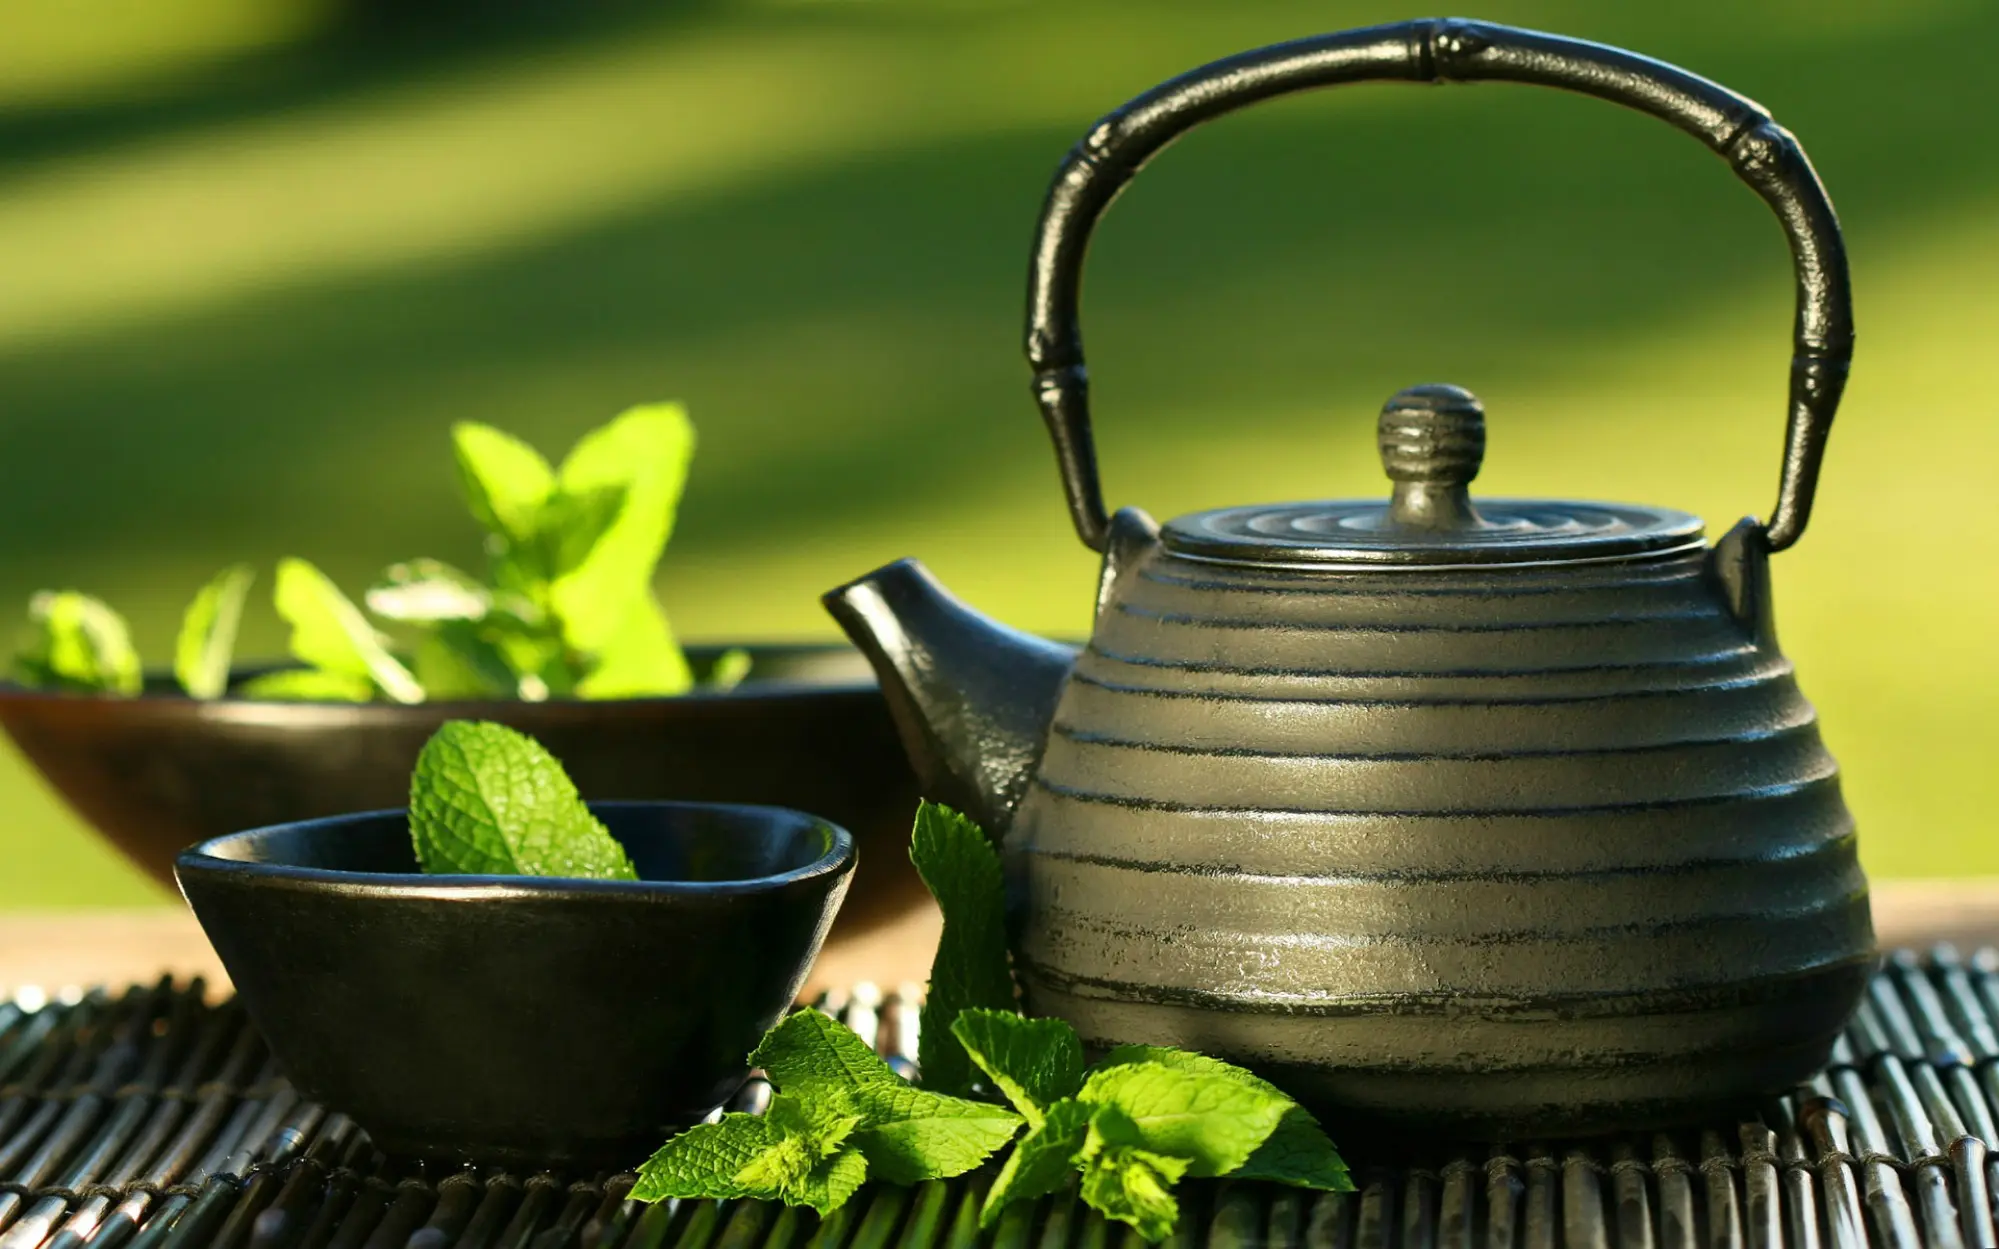 Ternyata memanaskan teh di microwave bisa buat kamu lebih sehat. Kok bisa? (Sumber Foto: themagicpads.com)